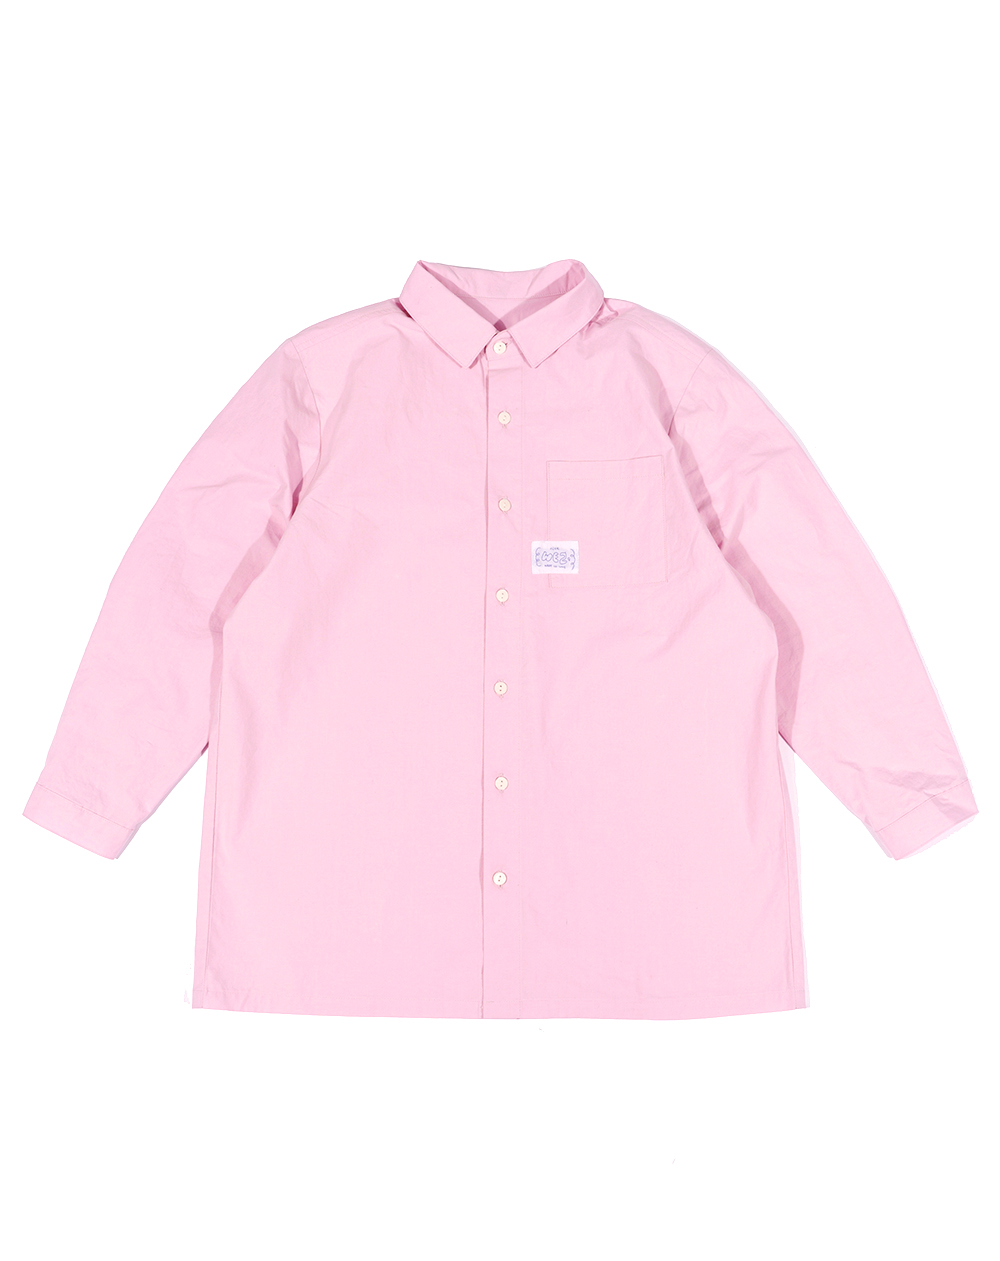 핑크 셔츠